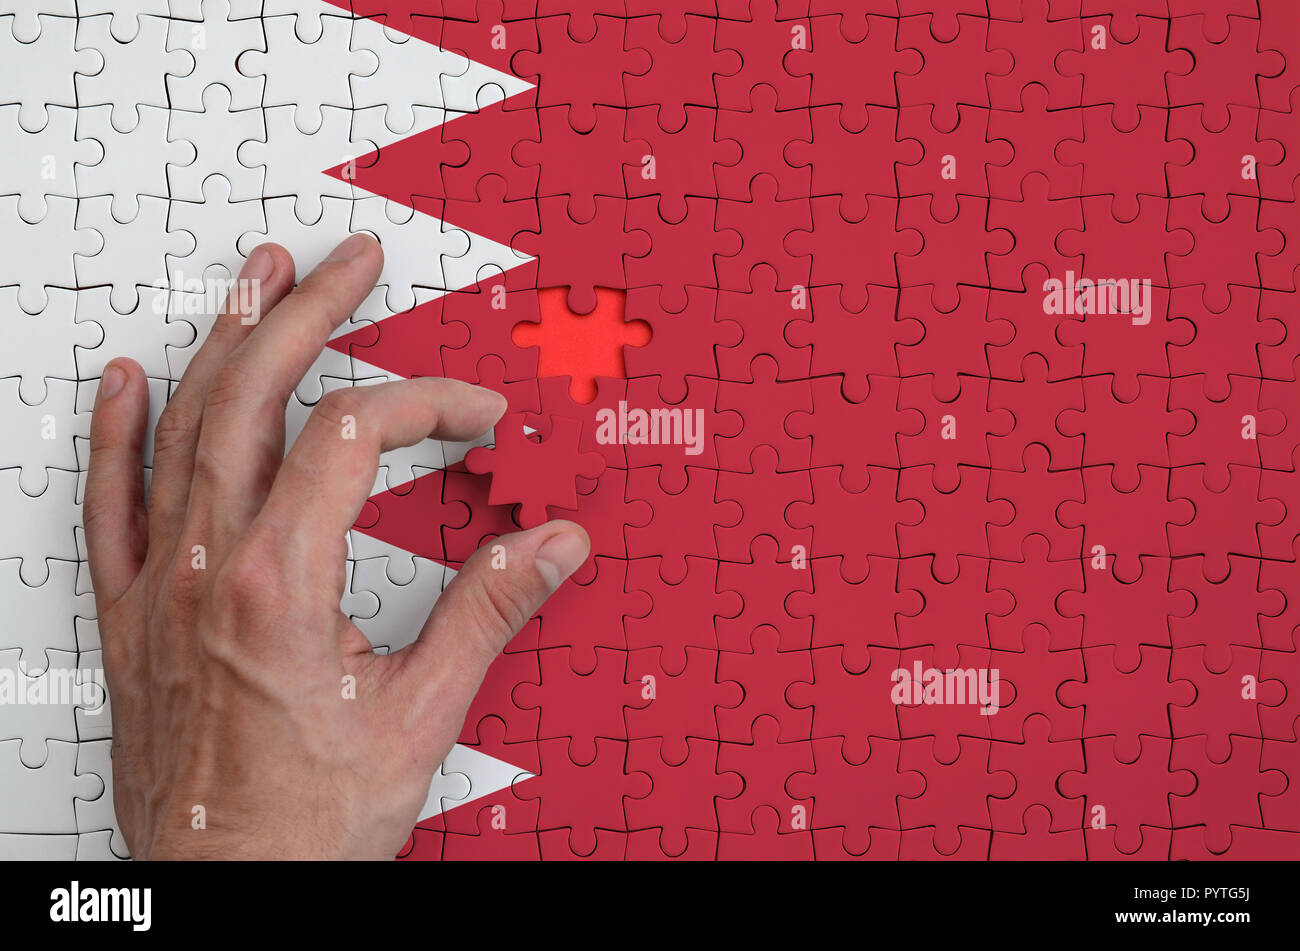 Drapeau de Bahreïn est représenté sur un casse-tête, qui la main de l'homme achève de se plier. Banque D'Images